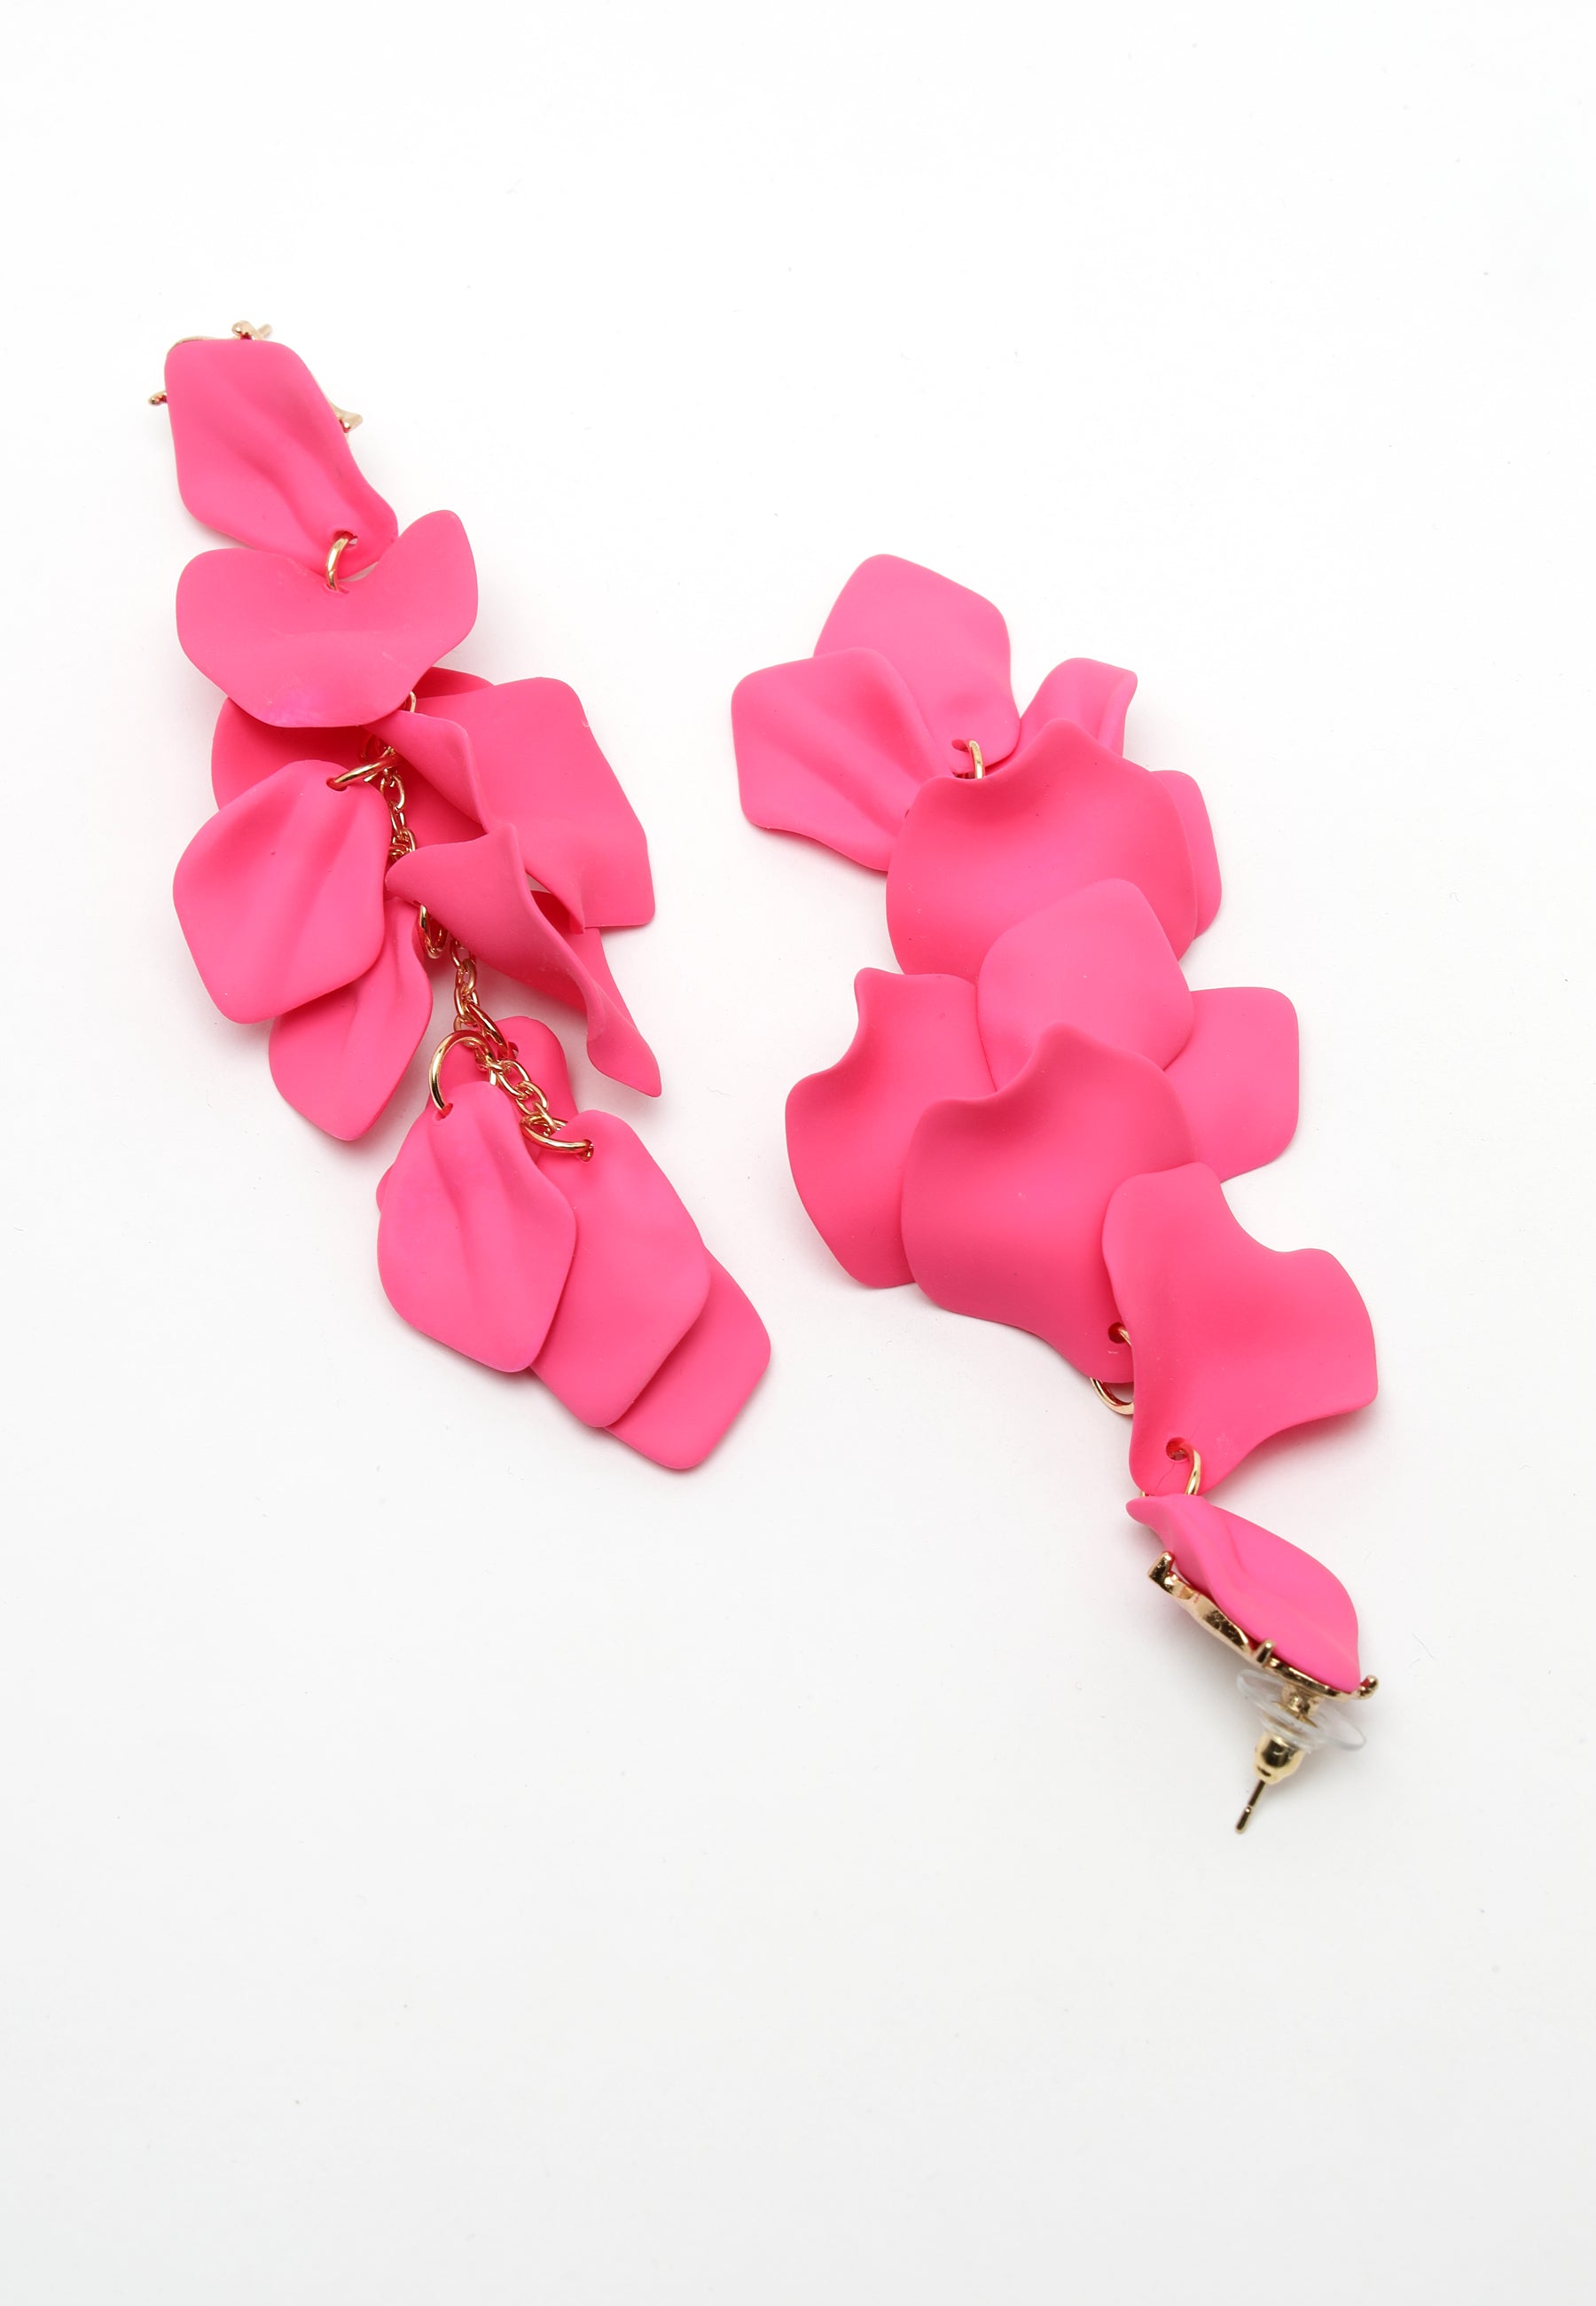 Boucles d'oreilles pendantes en forme de pétale de rose rose.